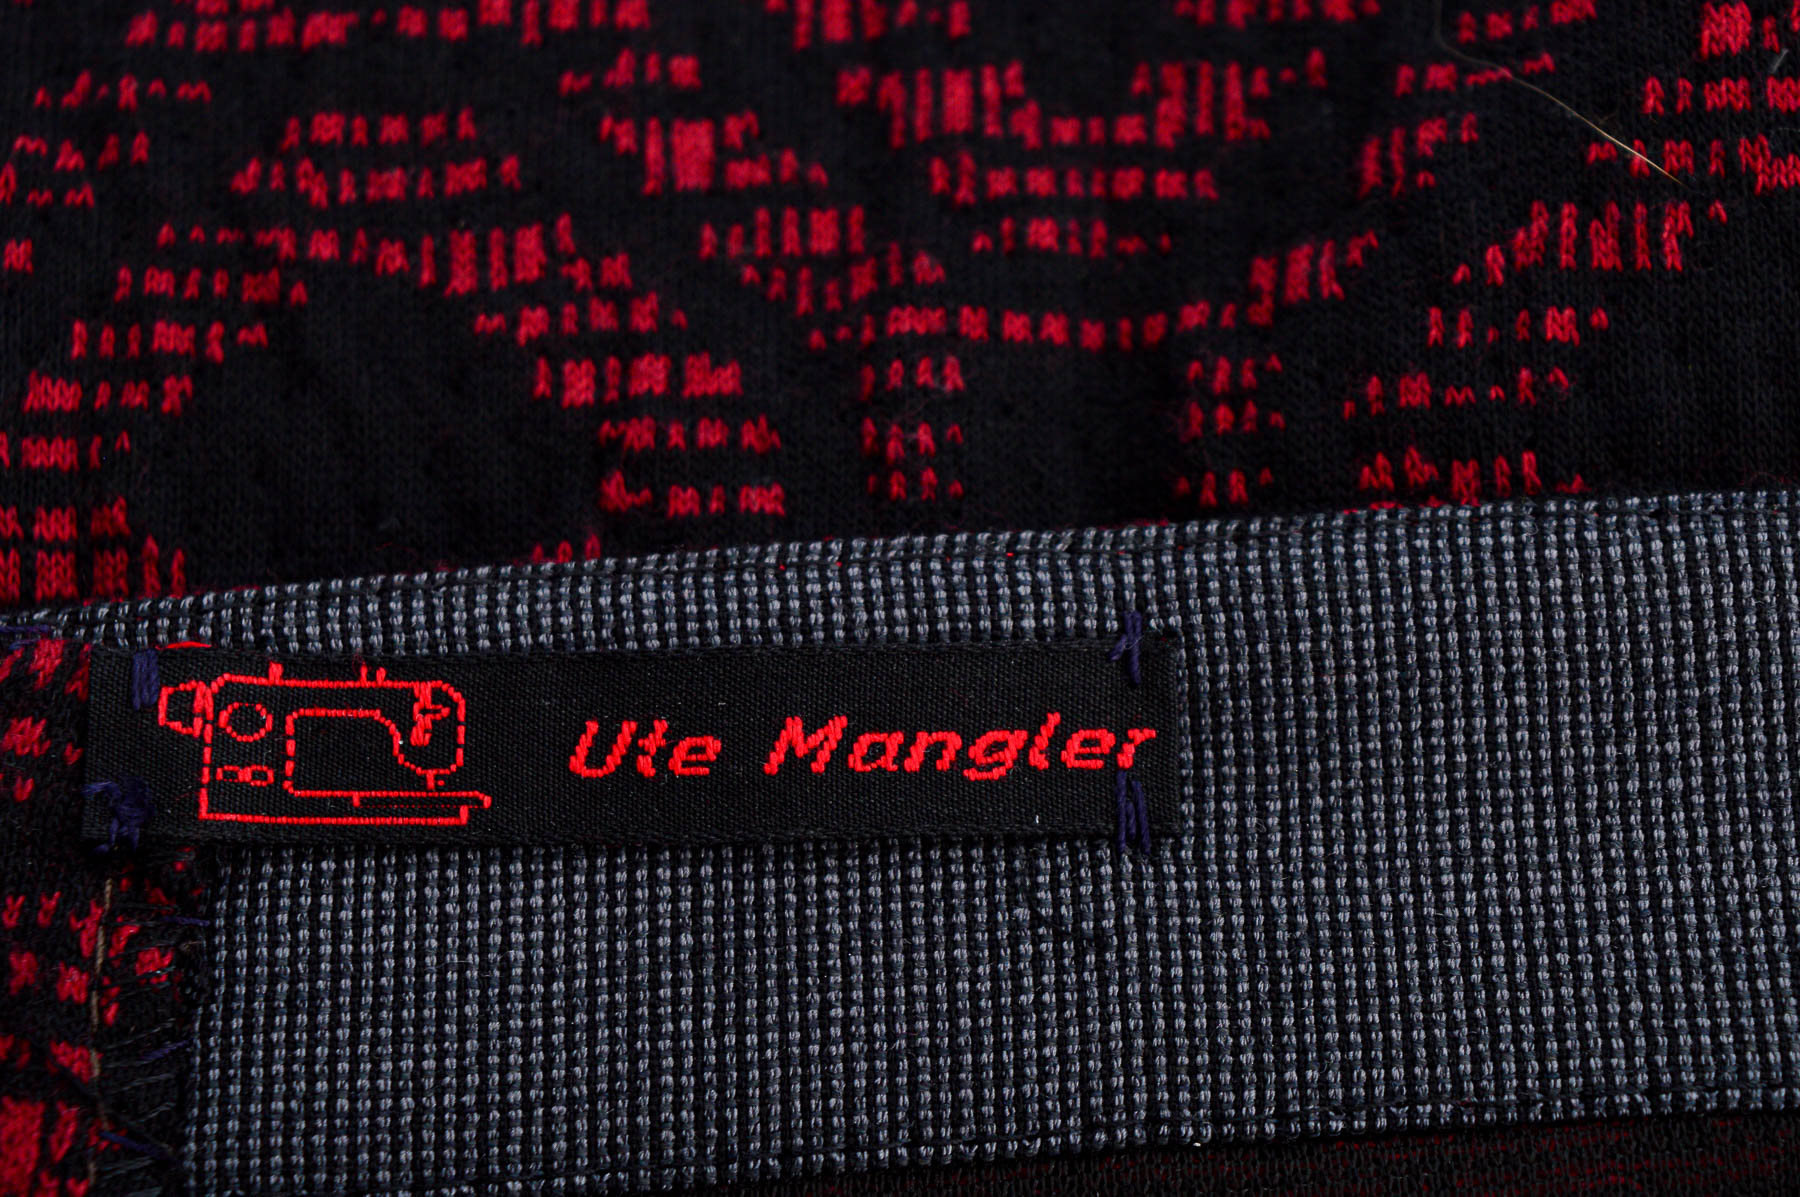 Skirt - Ute Mangler - 2